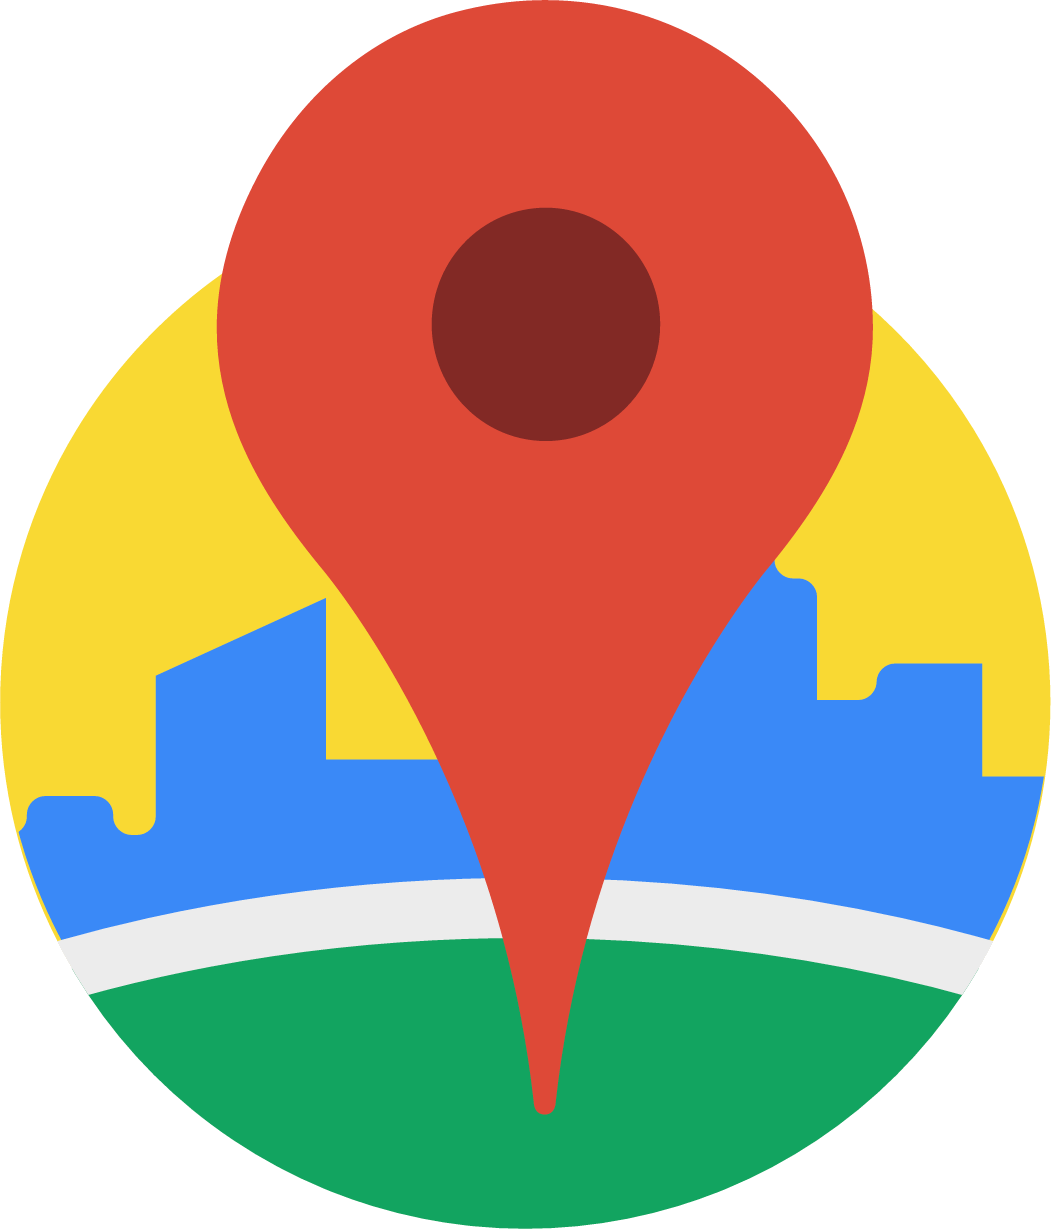 Google Maps Logo PNG Image | PNG Mart